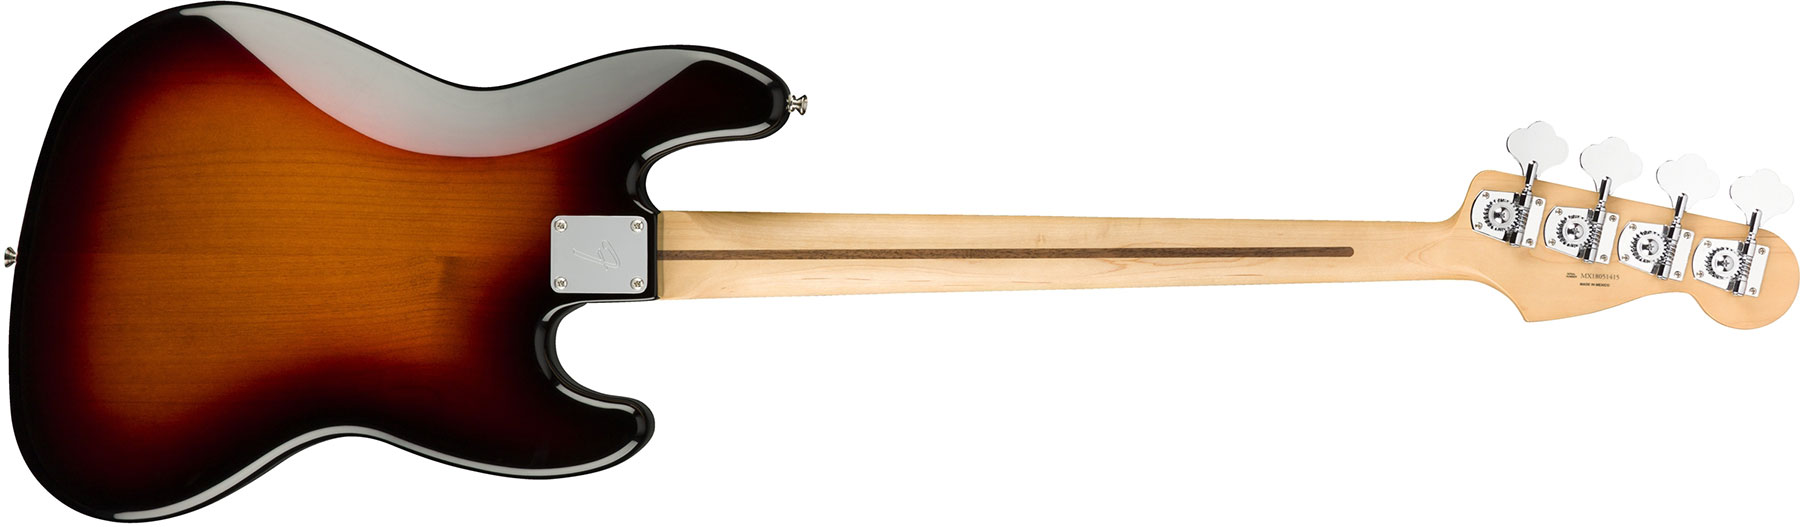 Fender Jazz Bass Player Lh Gaucher Mex Pf - 3-color Sunburst - Basse Électrique Solid Body - Variation 1